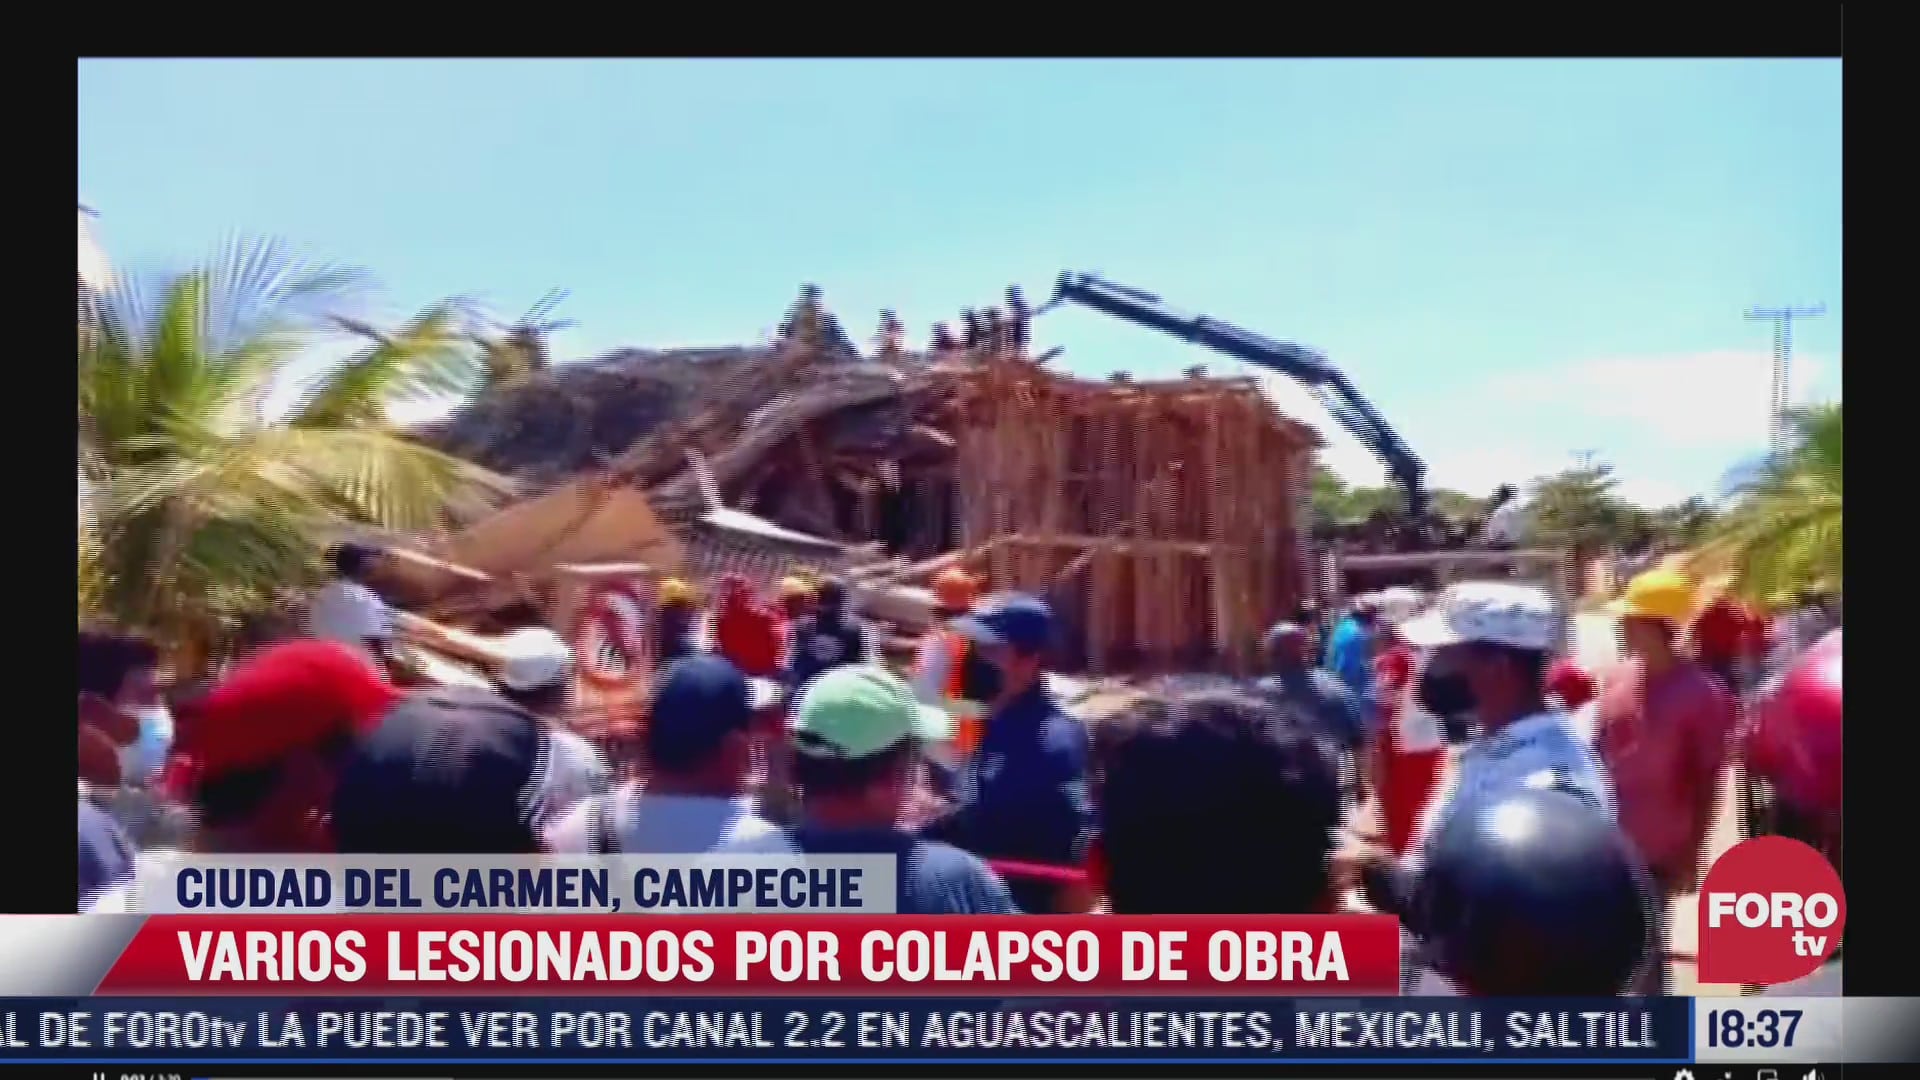 colapsa obra en ciudad del carmen campeche hay varios heridos